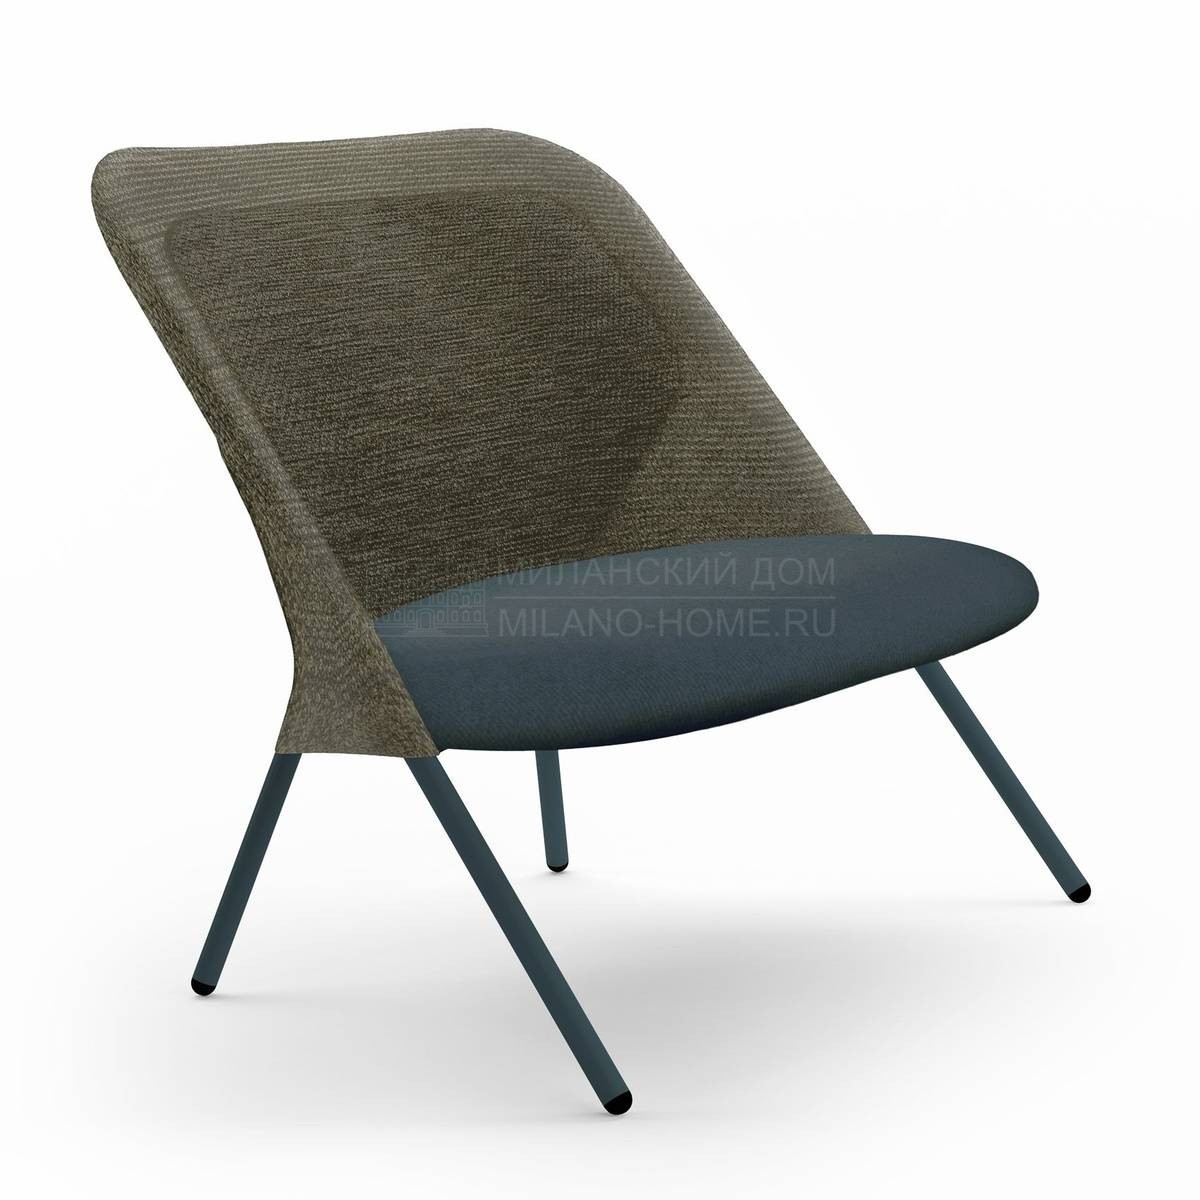 Кресло Shift Lounge Chair из Голландии фабрики MOOOI